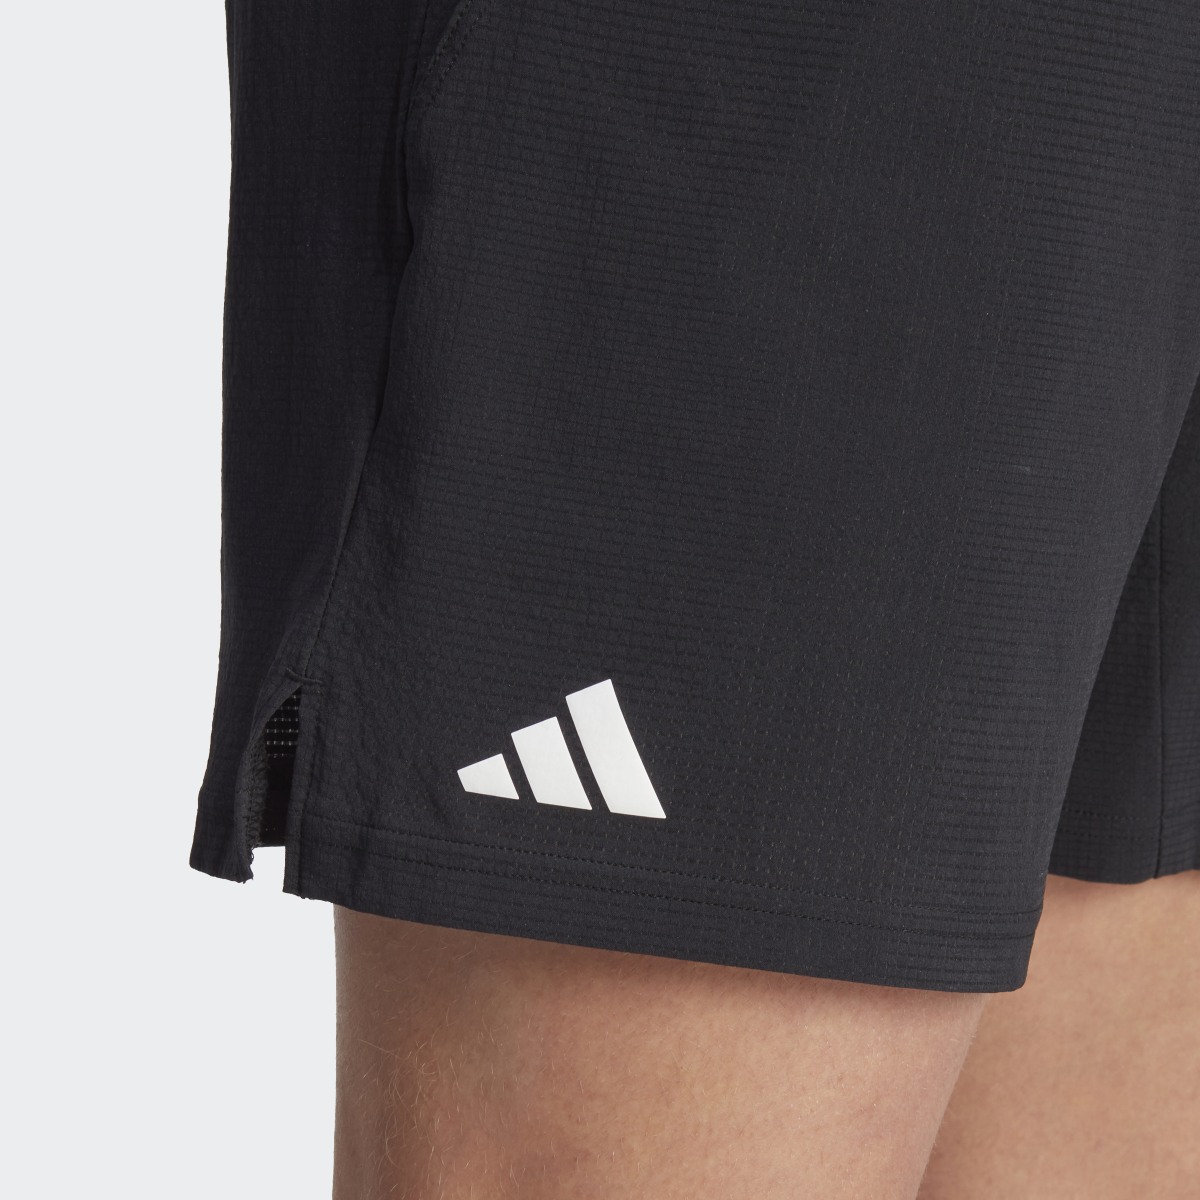 Adidas Ergo Tennis Shorts. 7